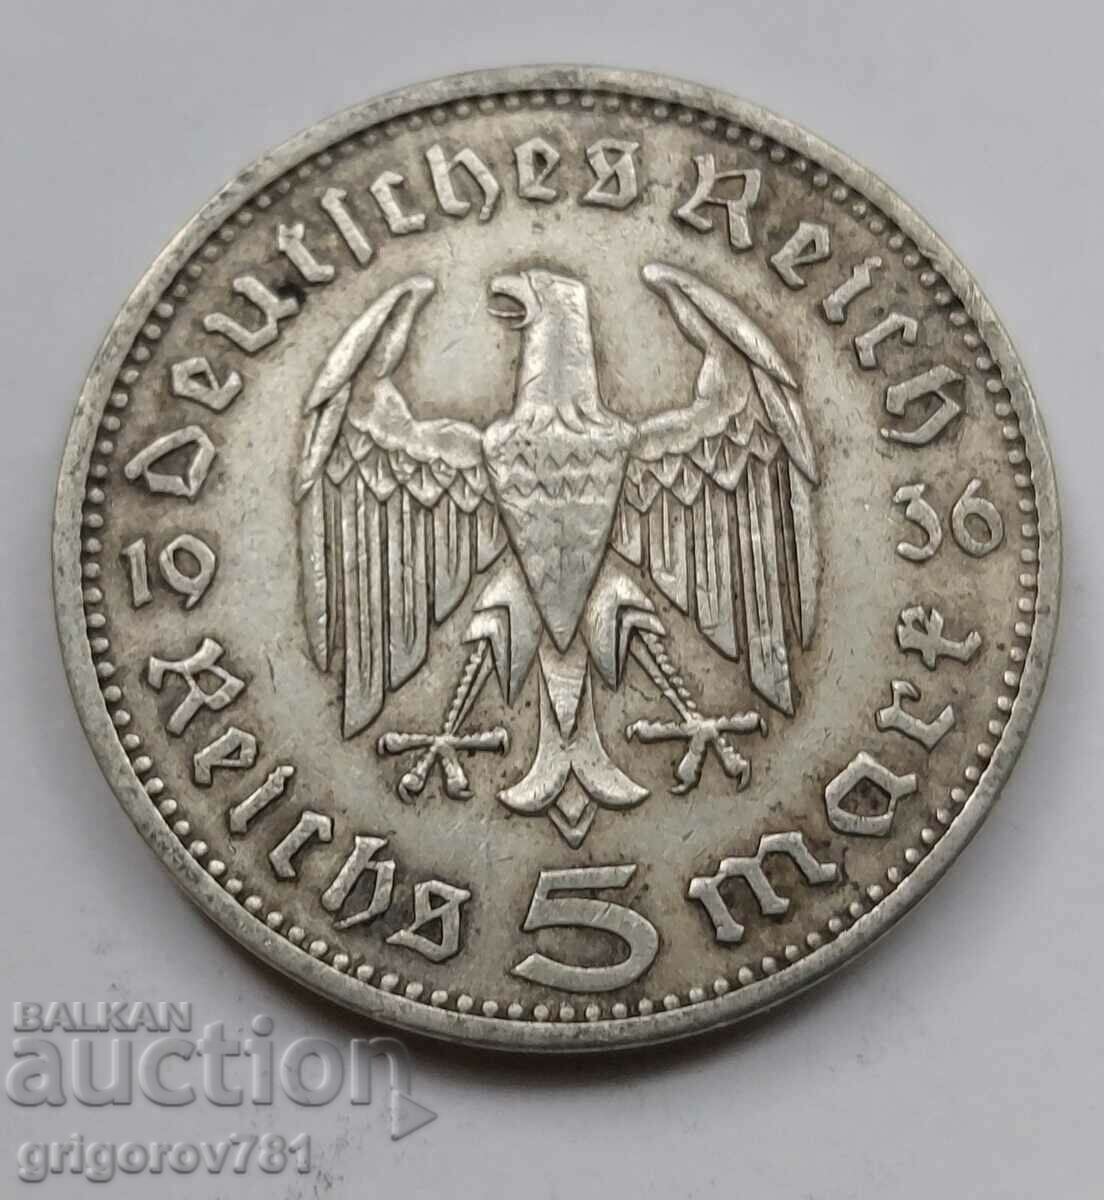 5 Mark Silver Γερμανία 1936 A III Reich Silver Coin #49